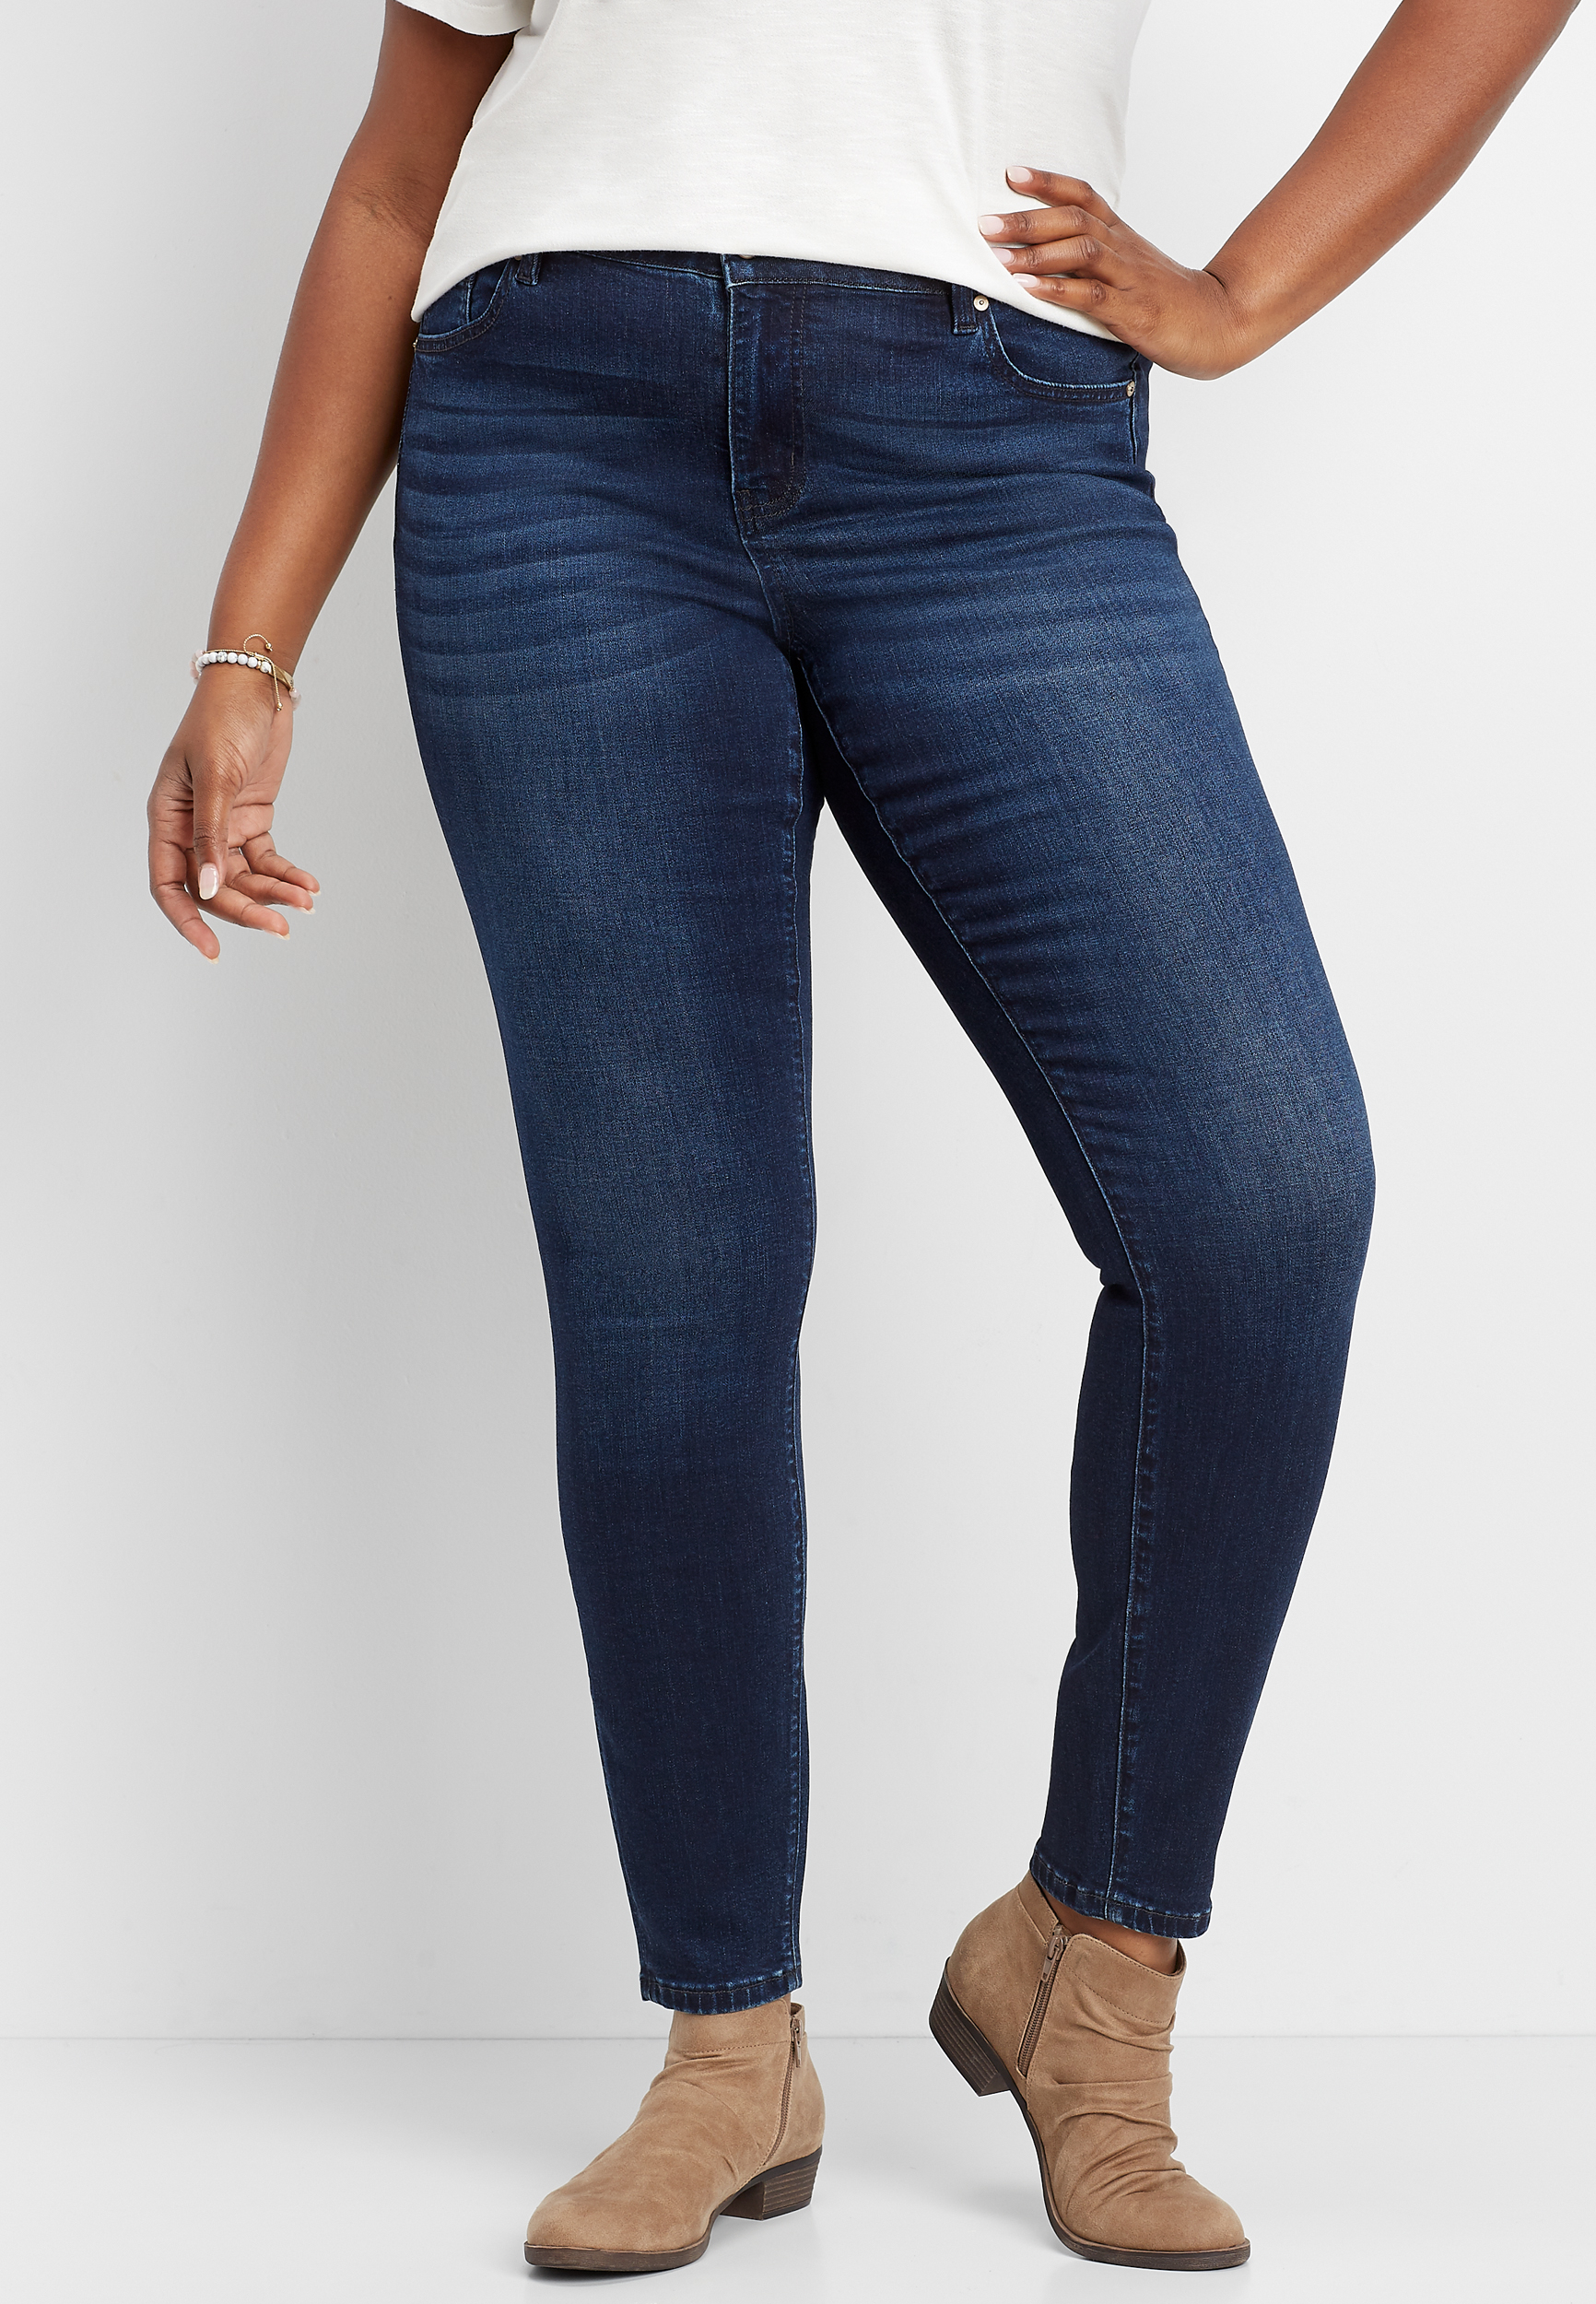 kancan jeans plus size